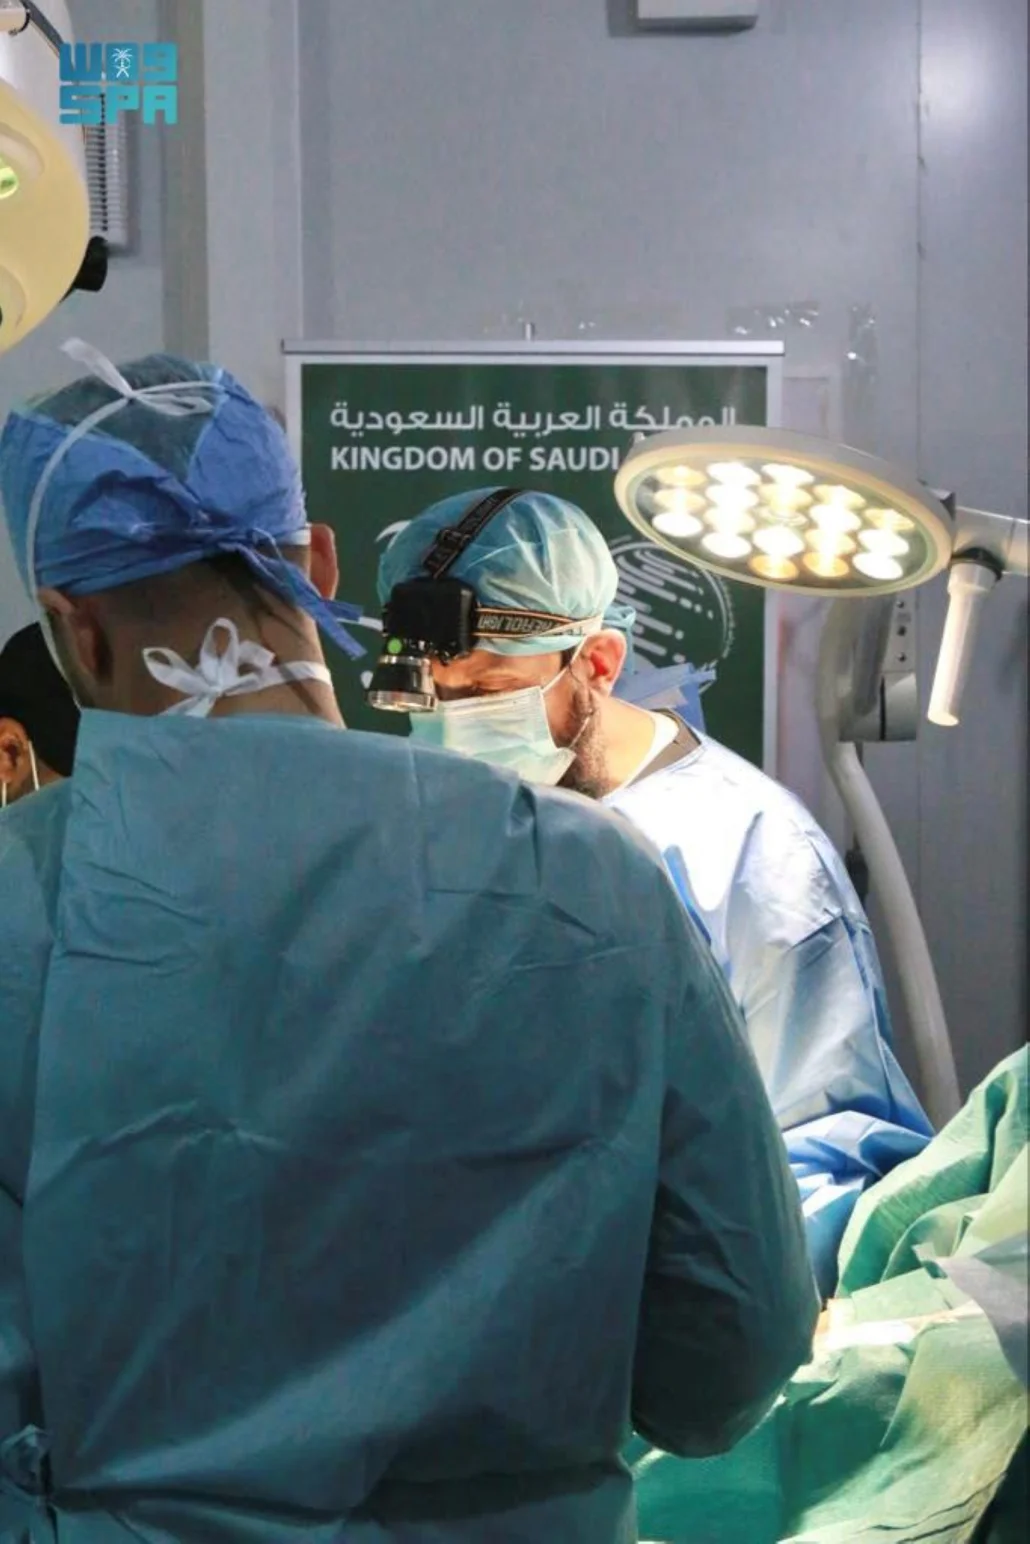 مركز الملك سلمان للإغاثة يختتم المشروع الطبي لجراحات المسالك البولية للبالغين في محافظة أرخبيل سقطرى